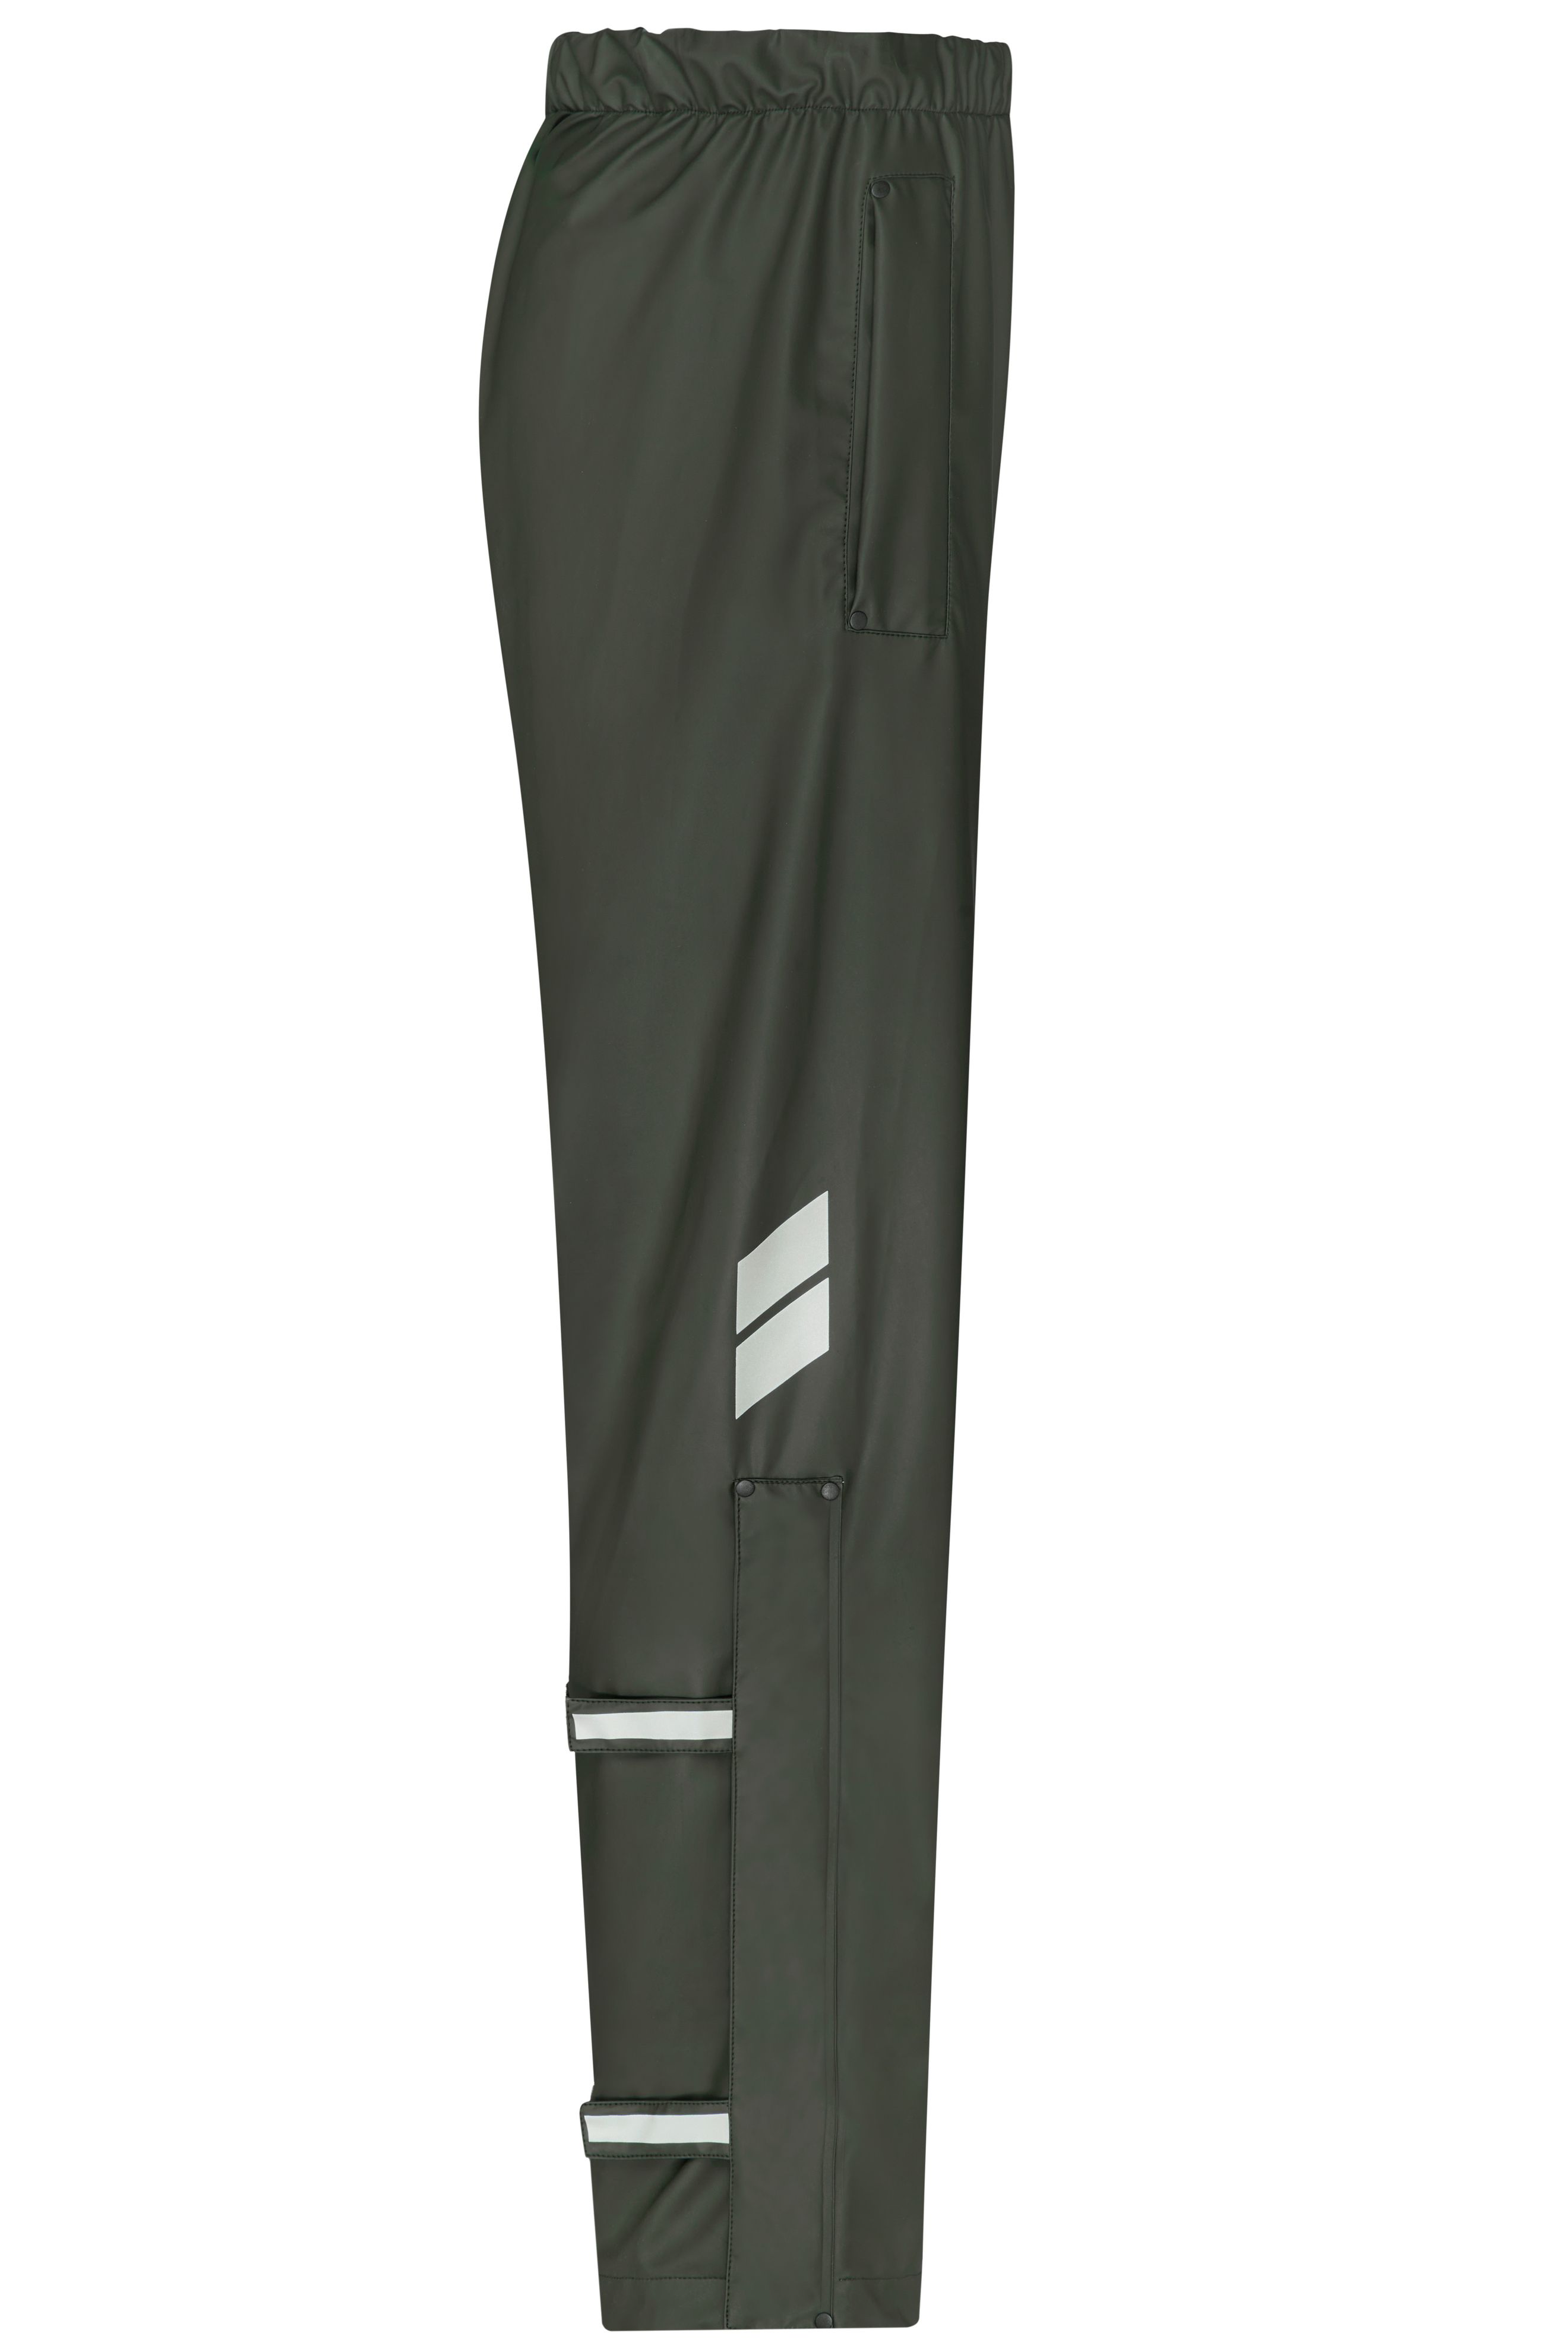 Worker Rain-Pants JN1845 Praktische Unisex- Regenhose zum Überziehen, vielseitig einsetzbar